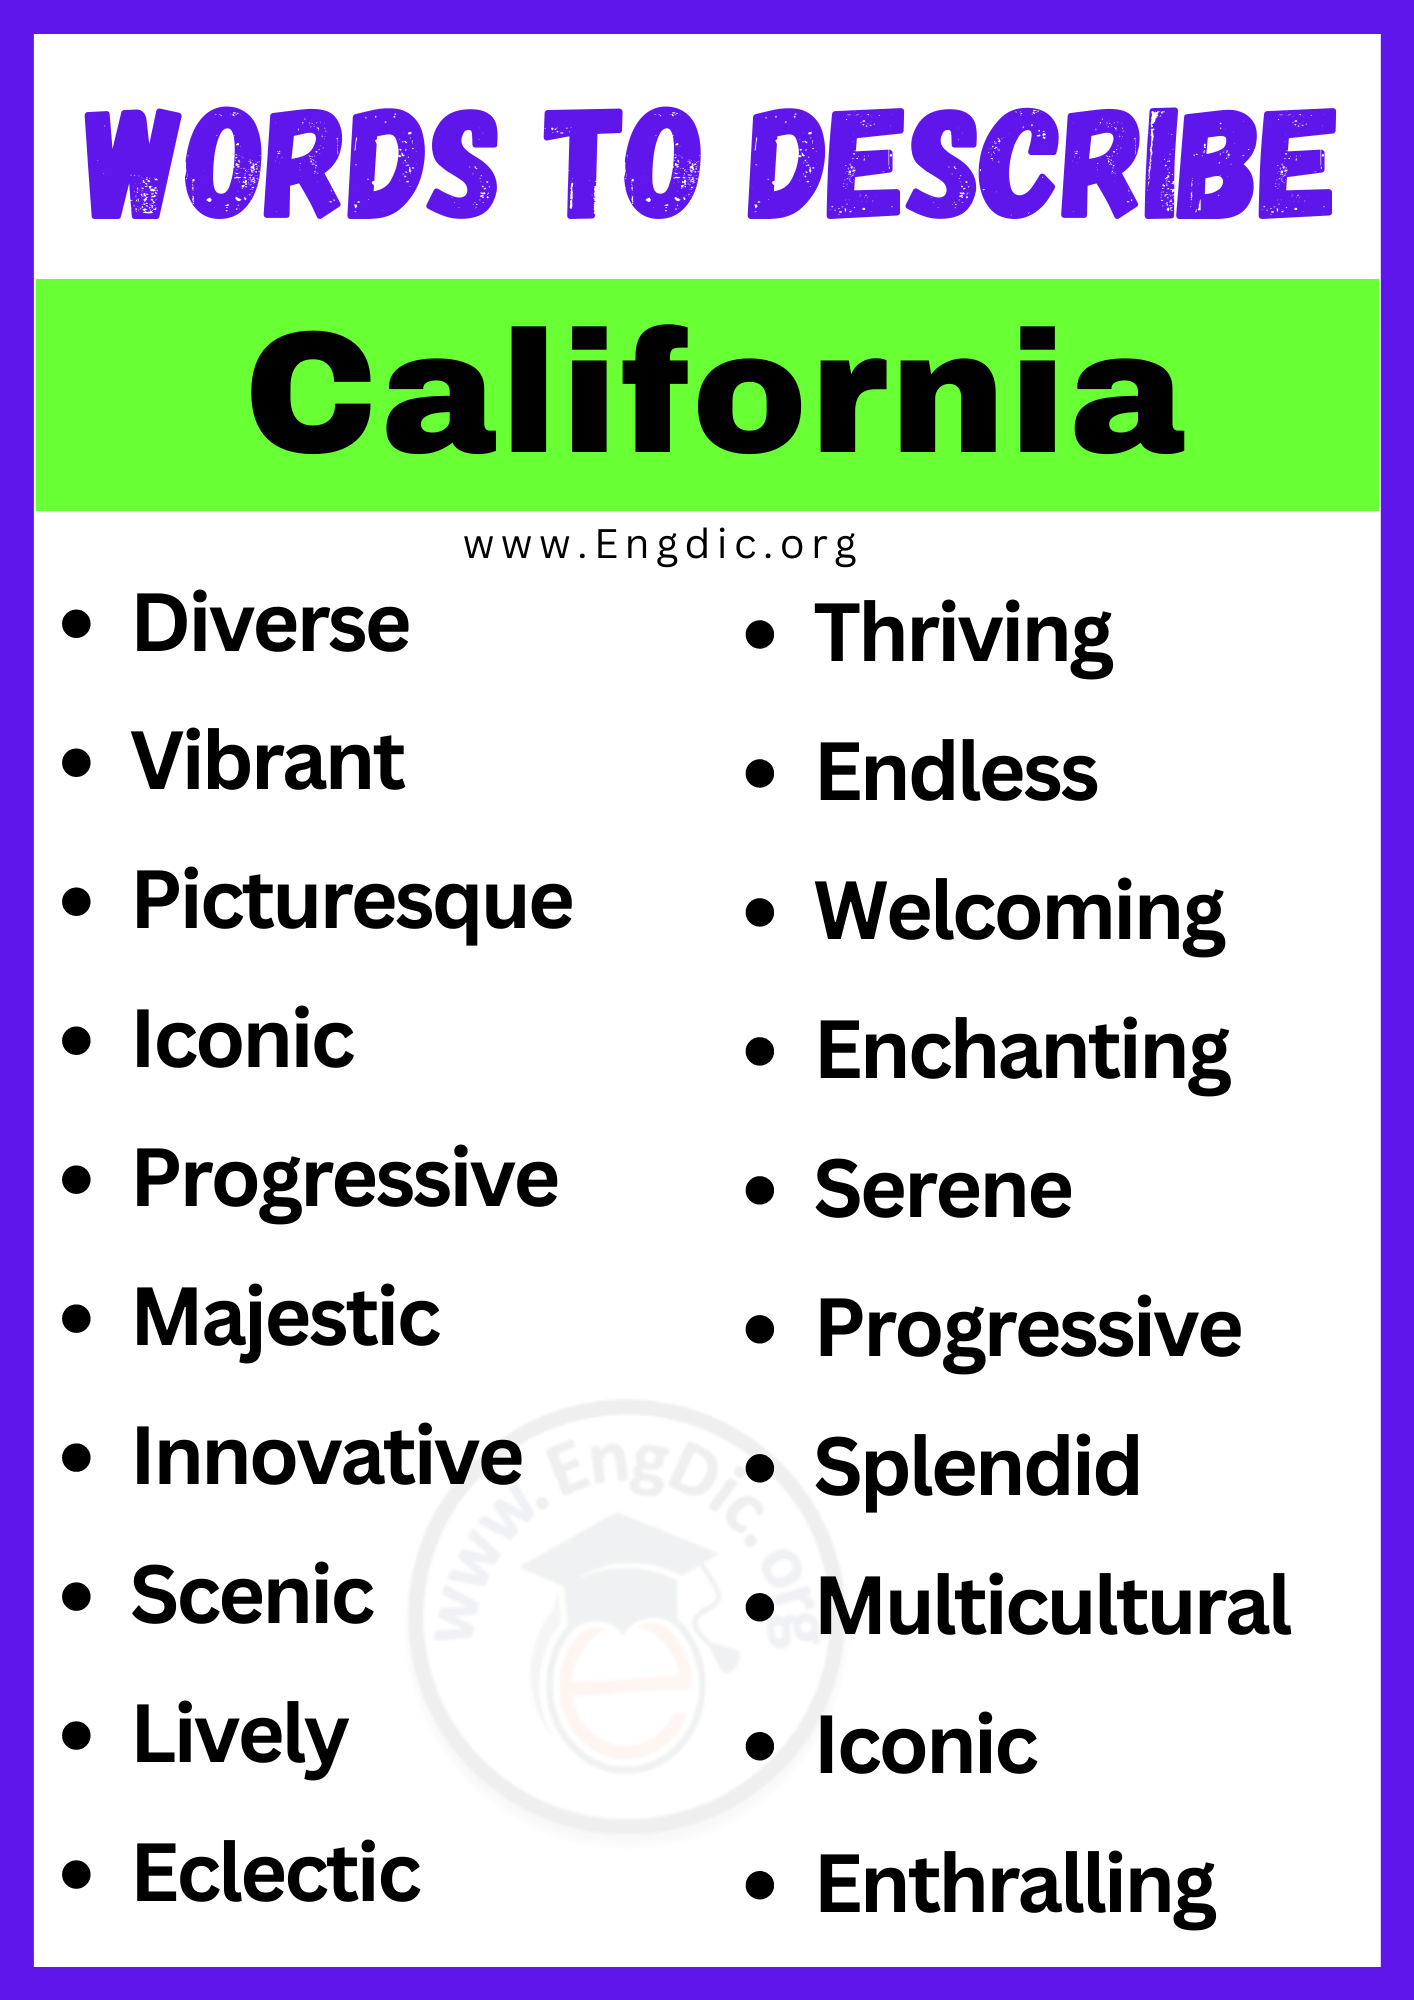 Words to Describe California